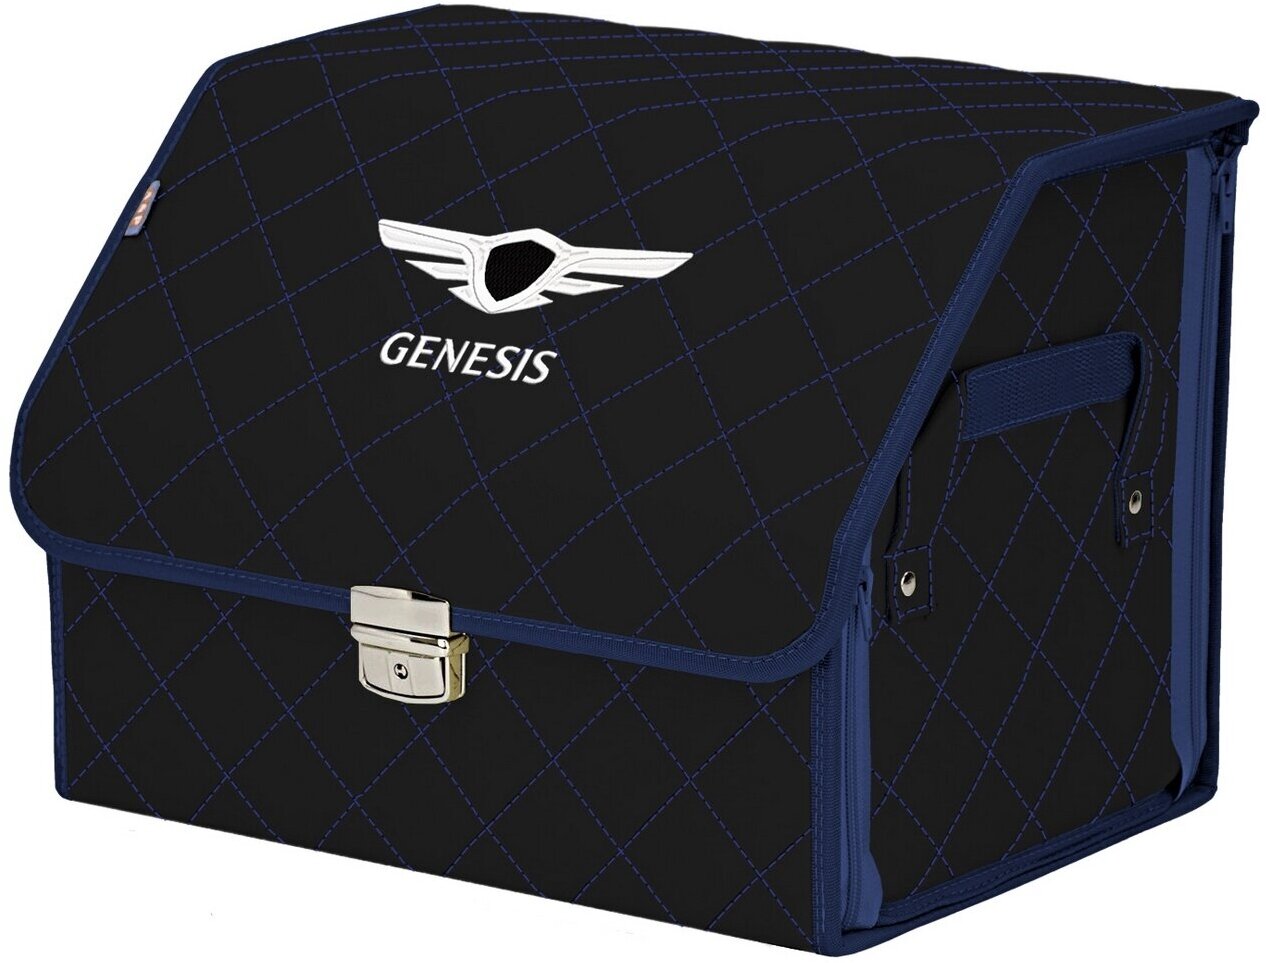 Органайзер-саквояж в багажник "Союз Премиум" (размер M). Цвет: черный с синей прострочкой Ромб и вышивкой Genesis (Дженезис).